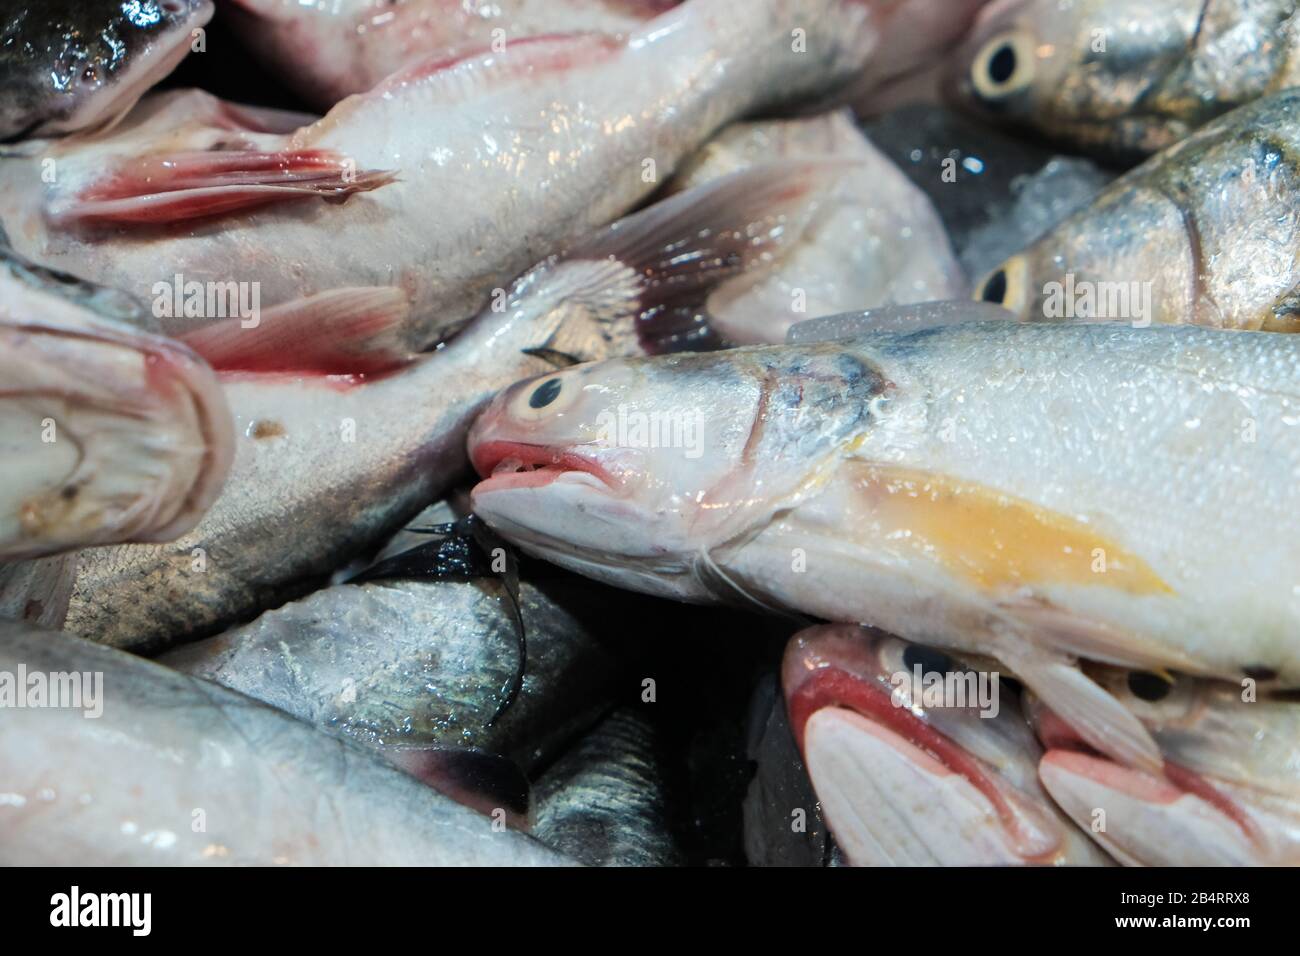 Eine Gruppe von Fischsorten aus dem Meer, die auf dem traditionellen Markt verkauft werden, Fisch und Meeresfrüchte Stockfoto